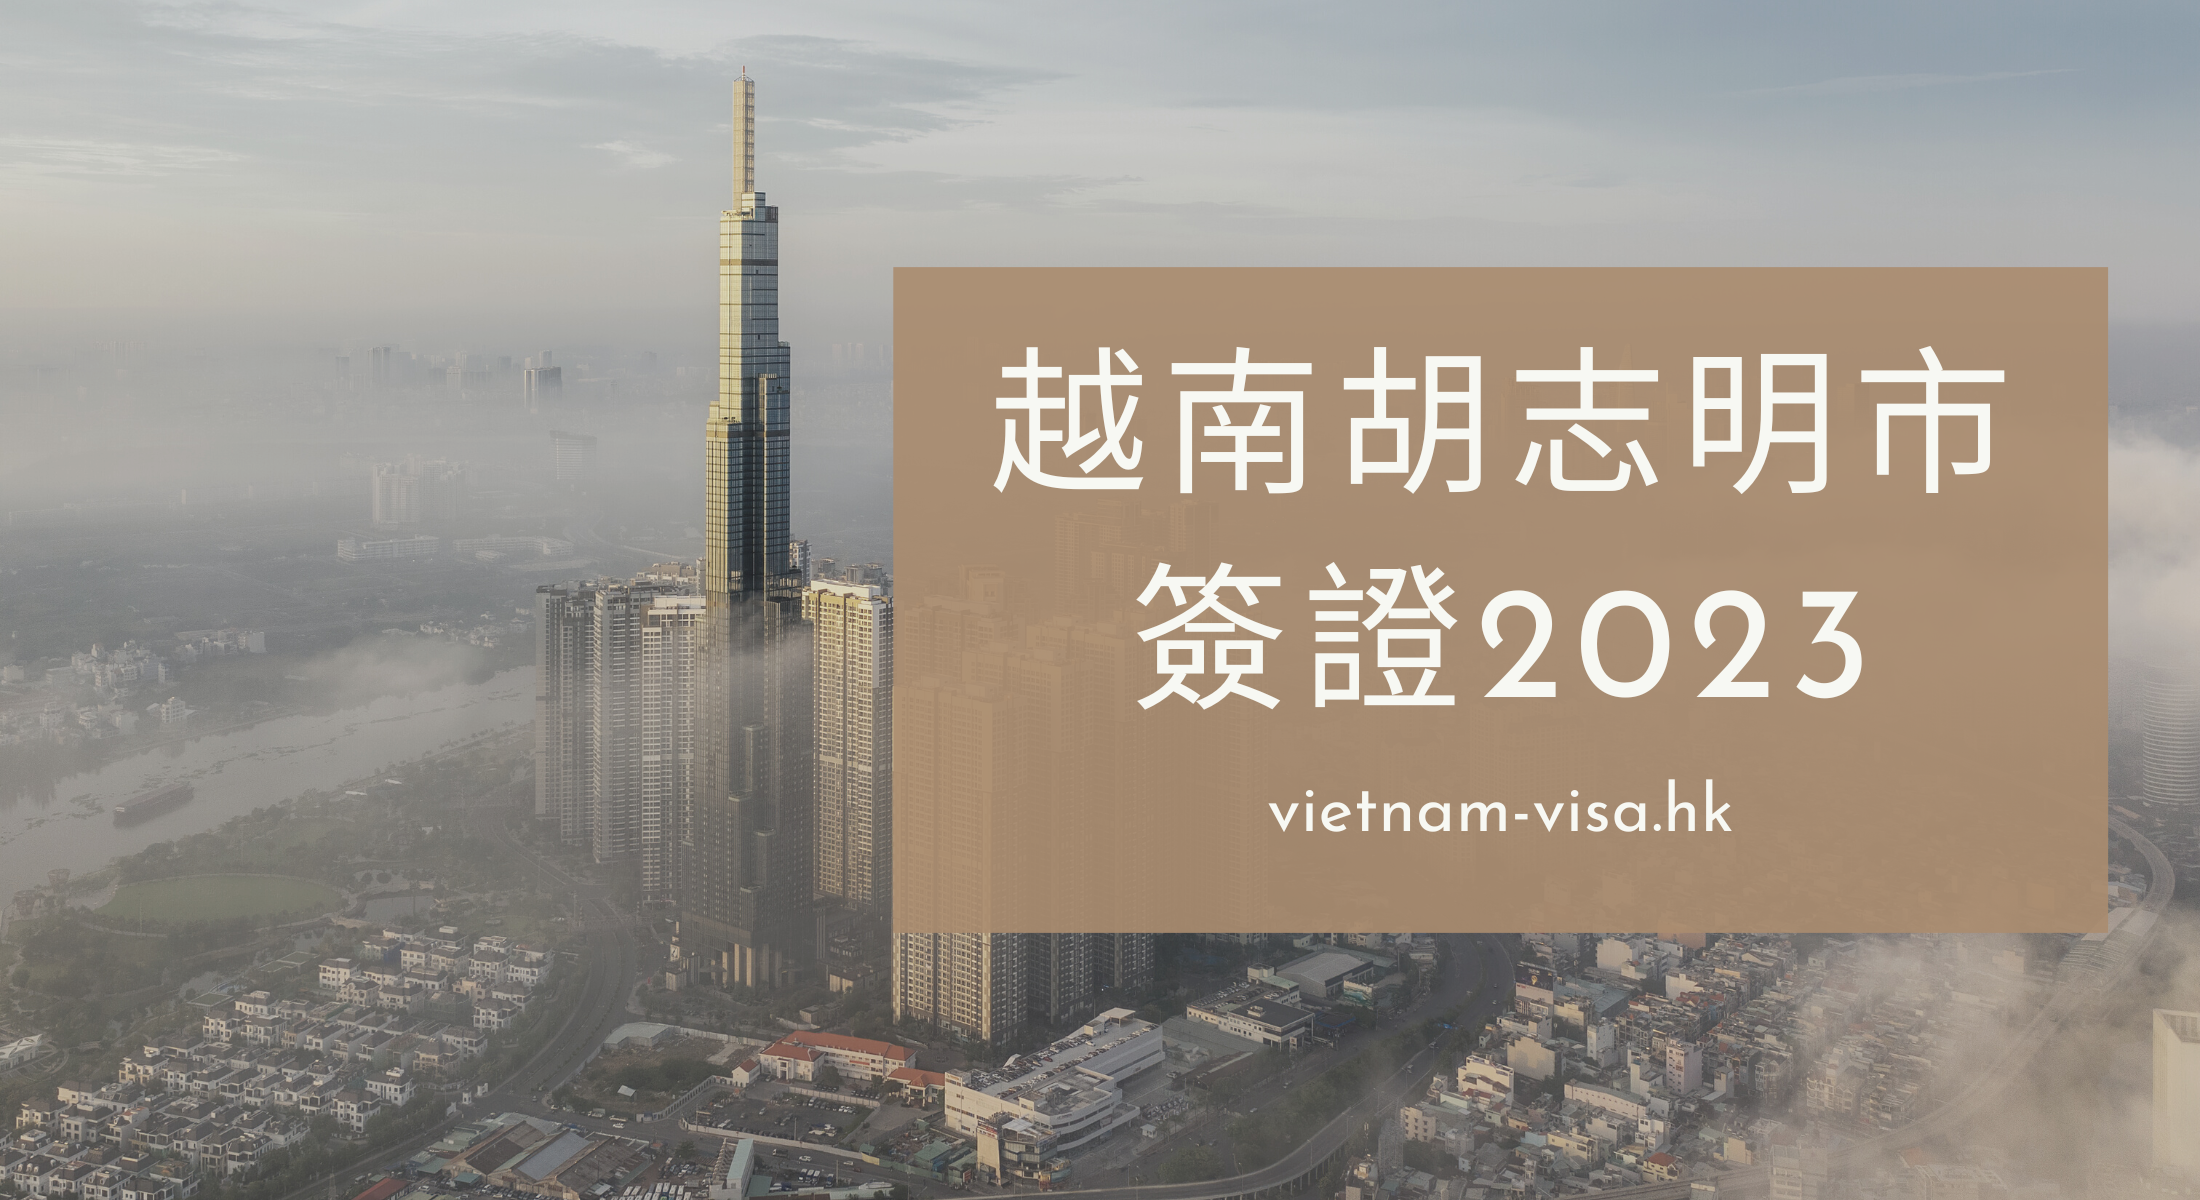 2023 申請越南胡志明簽證的指南 -胡志明旅遊必知